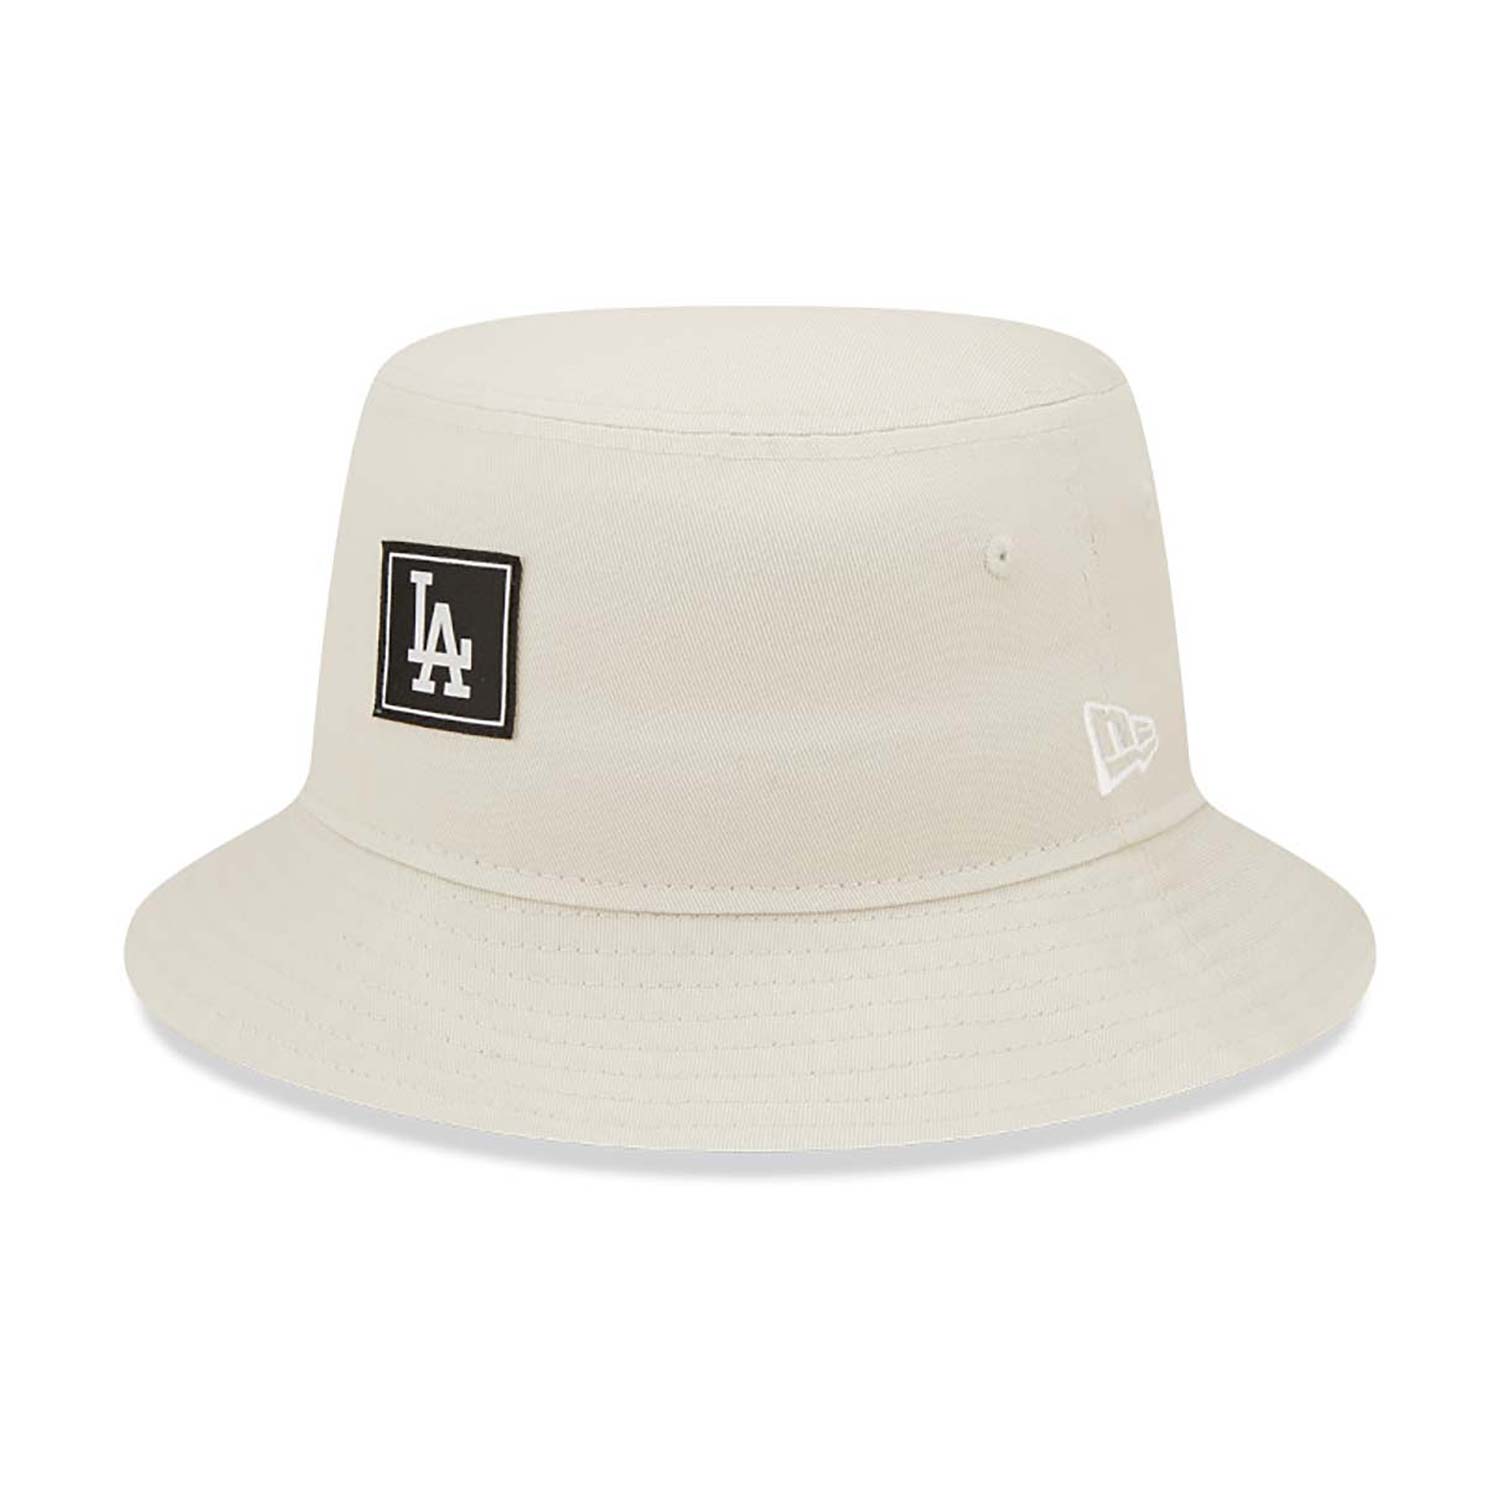 LA Dodgers Team Tab Tapered Cream Bucket Hat